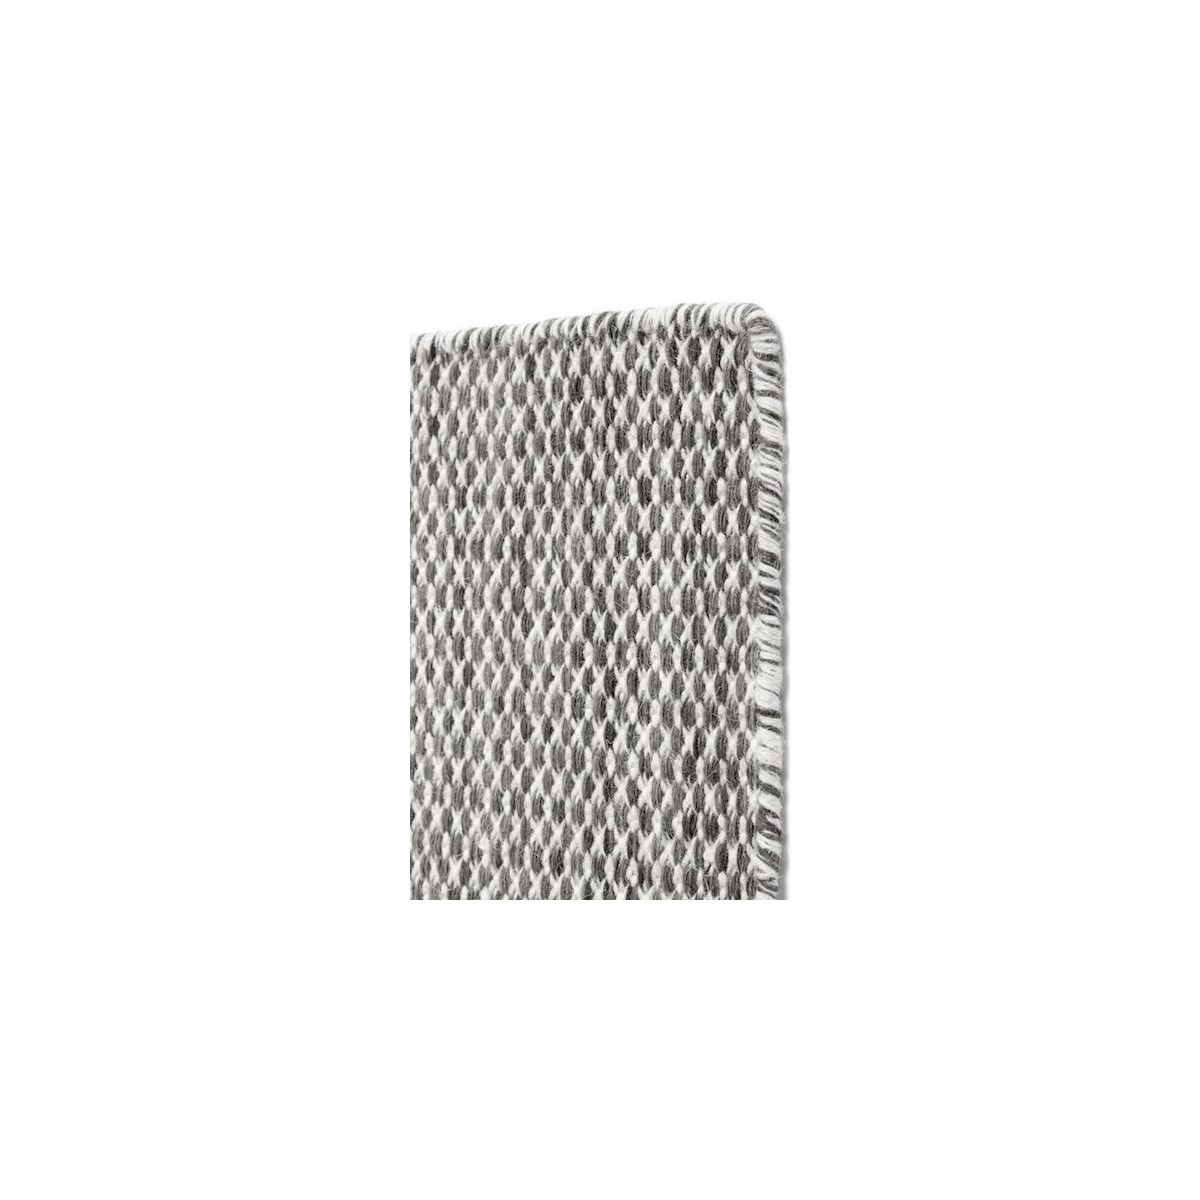 170x240cm - grey - Moiré Kelim rug